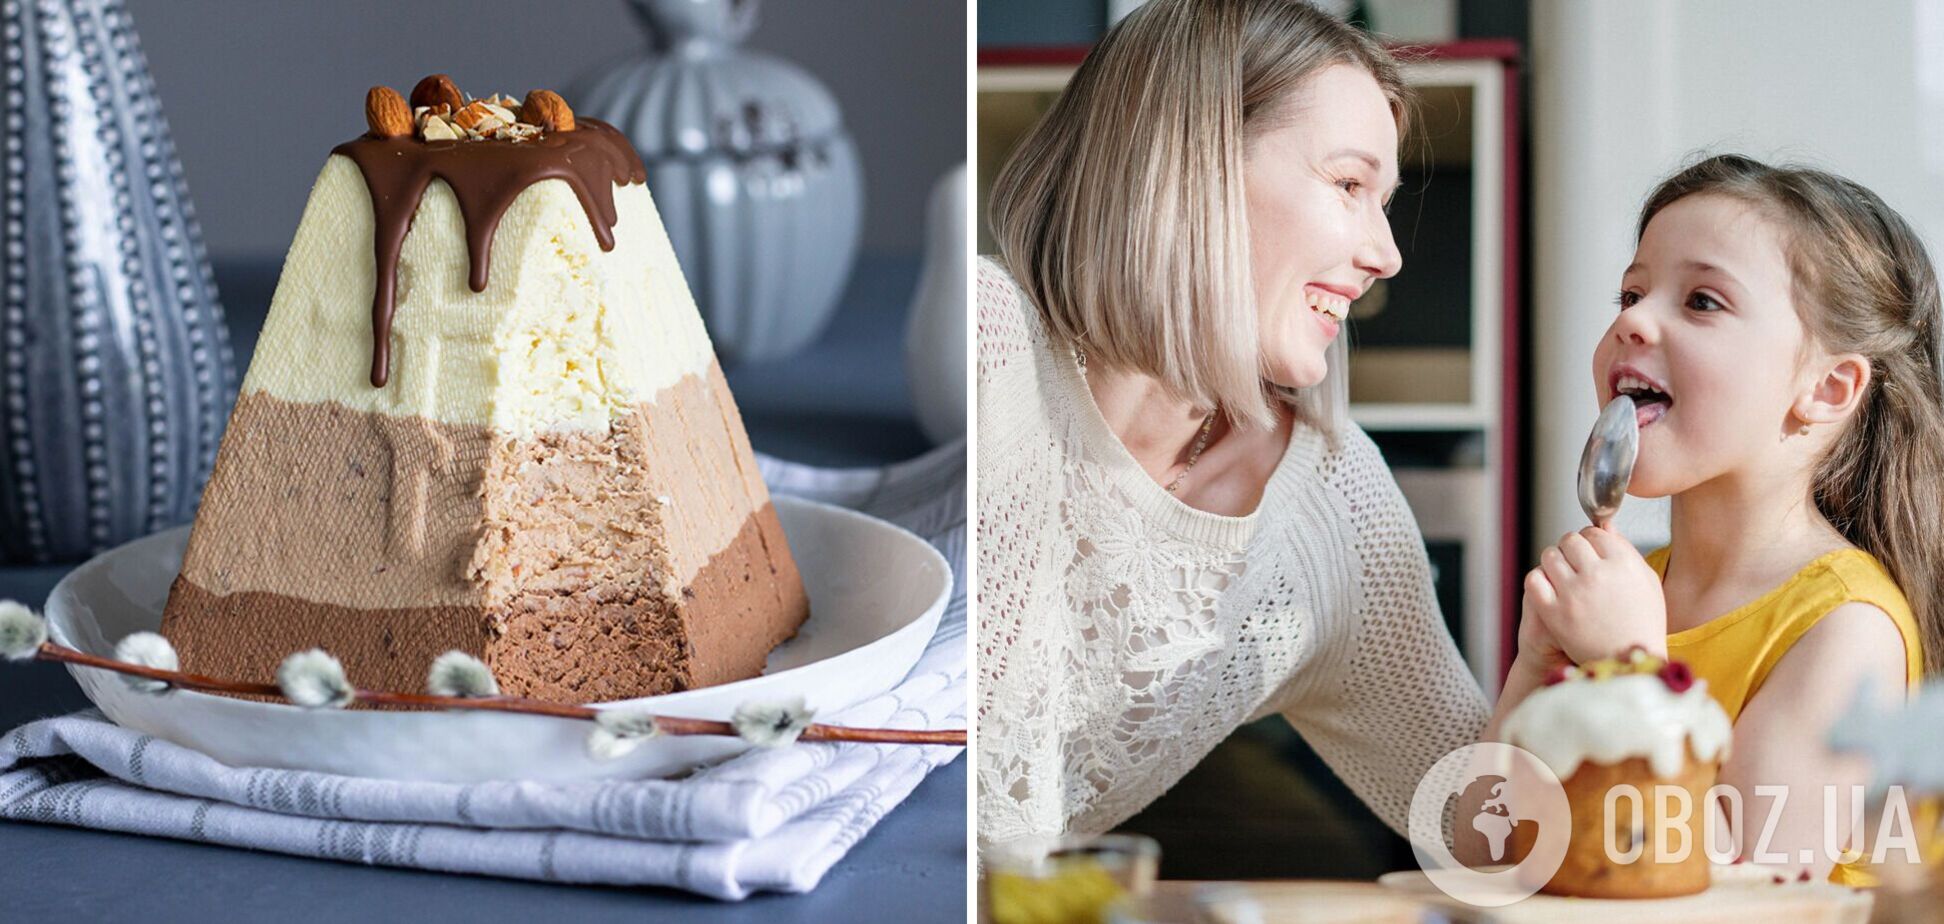 Паска 'Три шоколада': как приготовить легкий и необычный десерт без выпечки на праздник